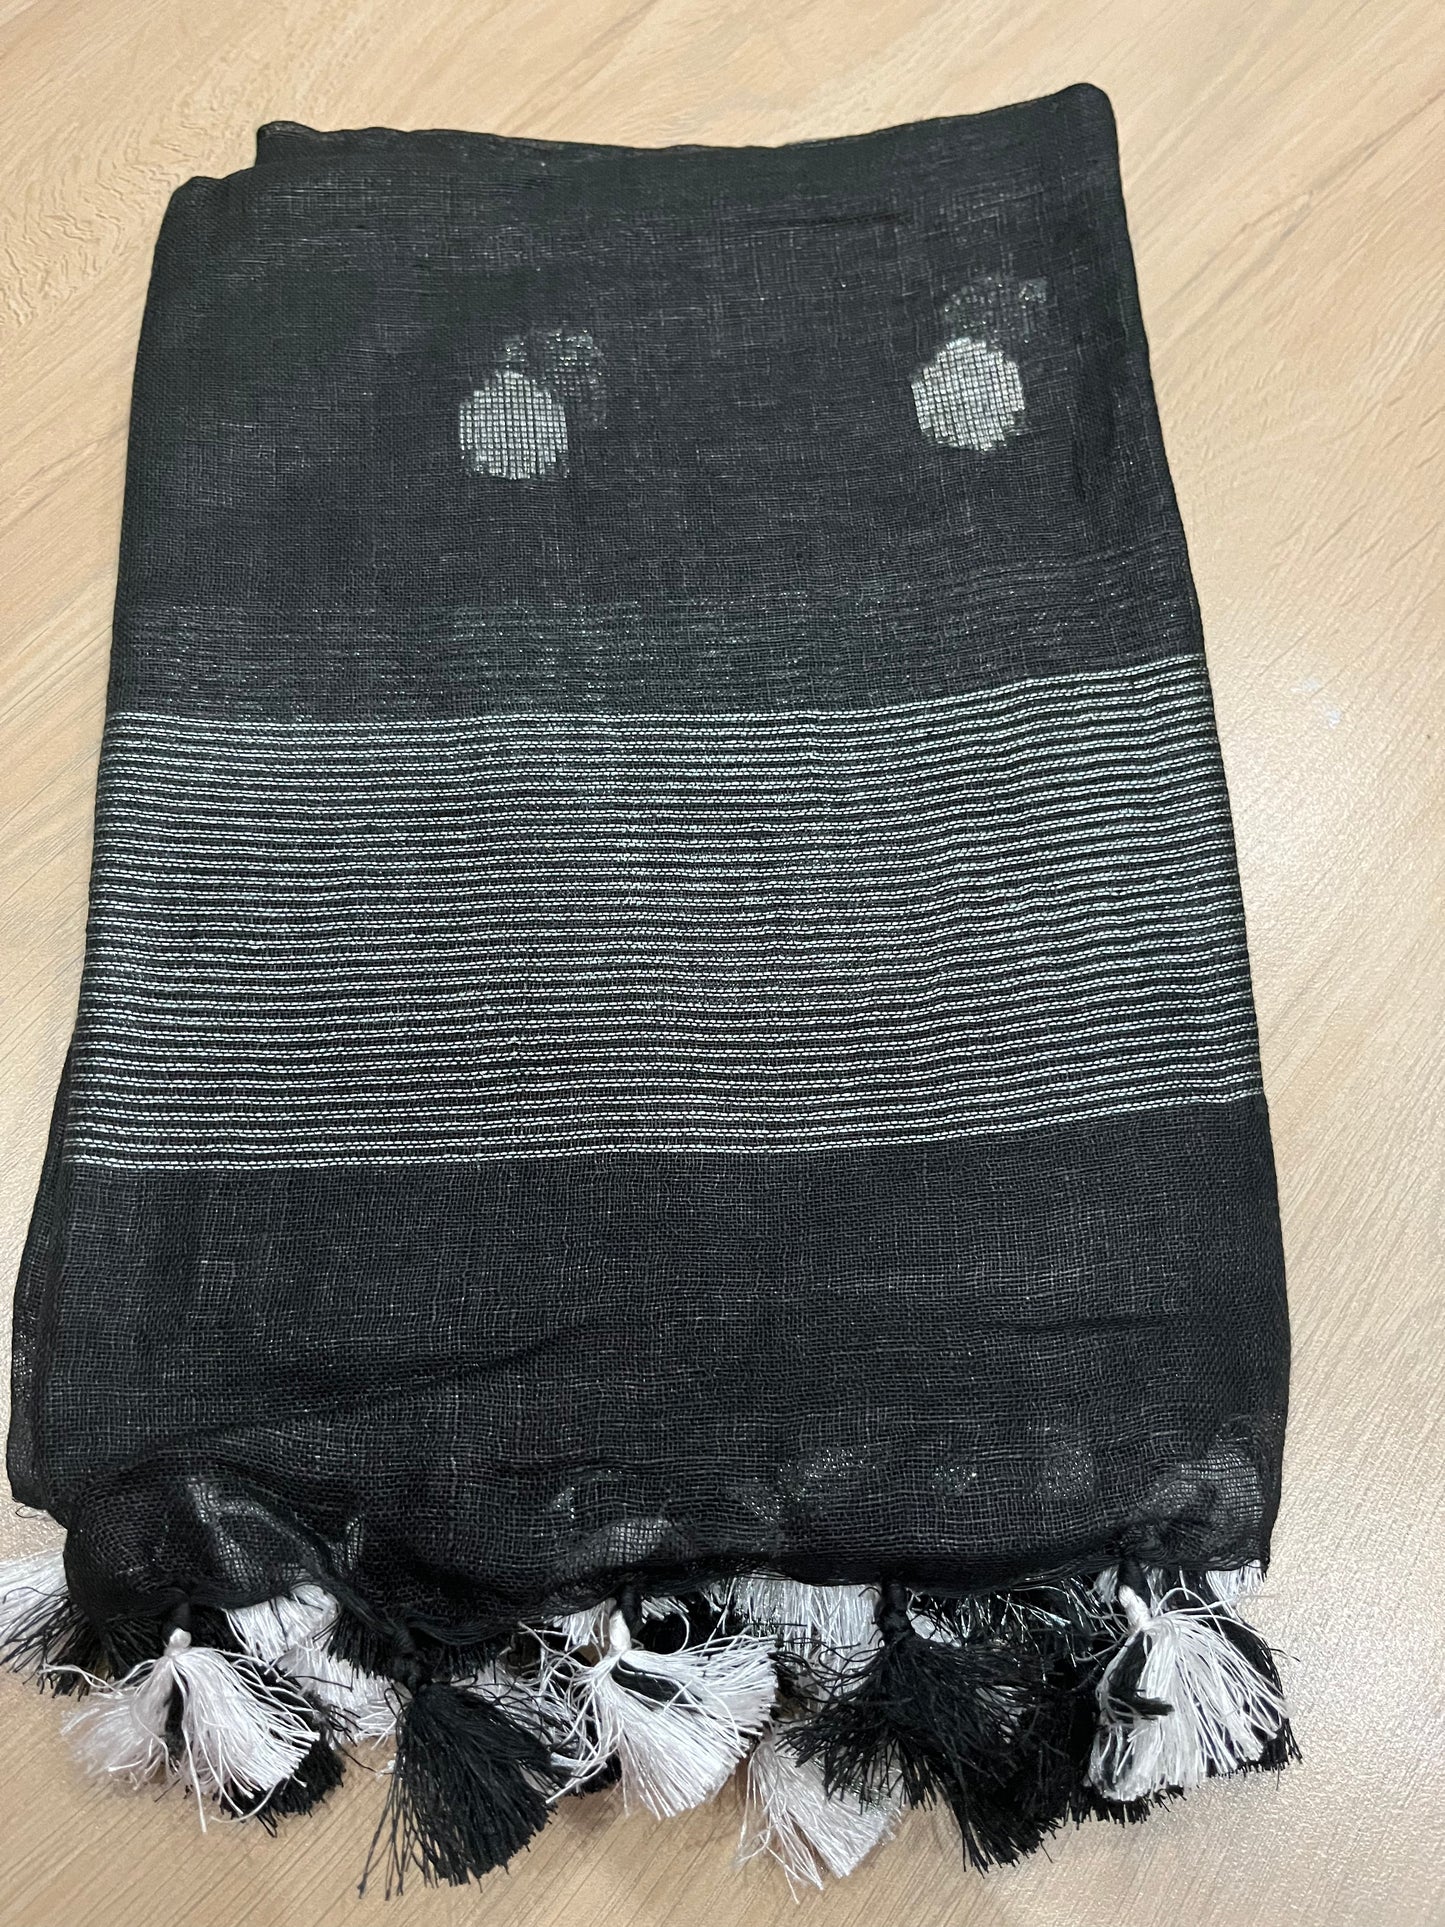 LINEN DUPATTA: Black Linen Dupatta with zari motif & silver zari border with Tassels | KIHUMS Dupatta